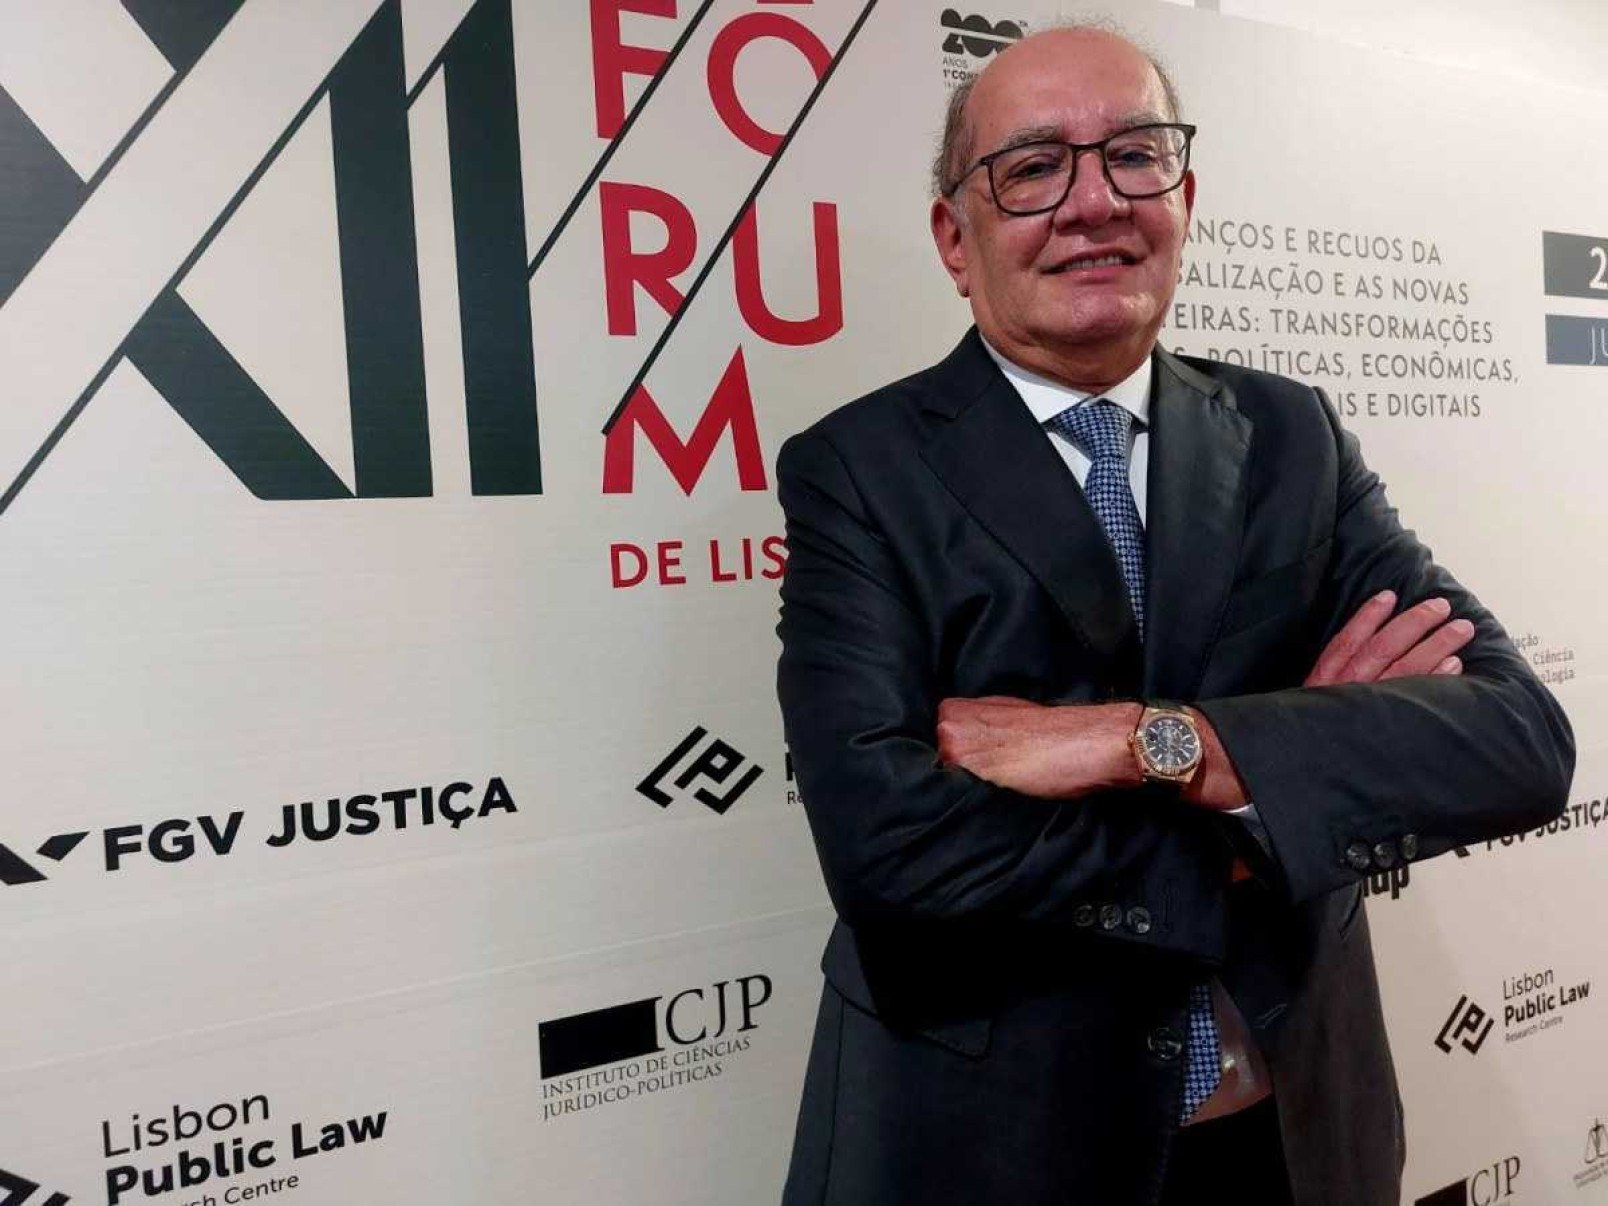 Durante o 12º Fórum de Lisboa, o ministro Gilmar Mendes conversou com jornalistas sobre a decisão do STF de descriminalizar o porte de maconha para uso pessoal